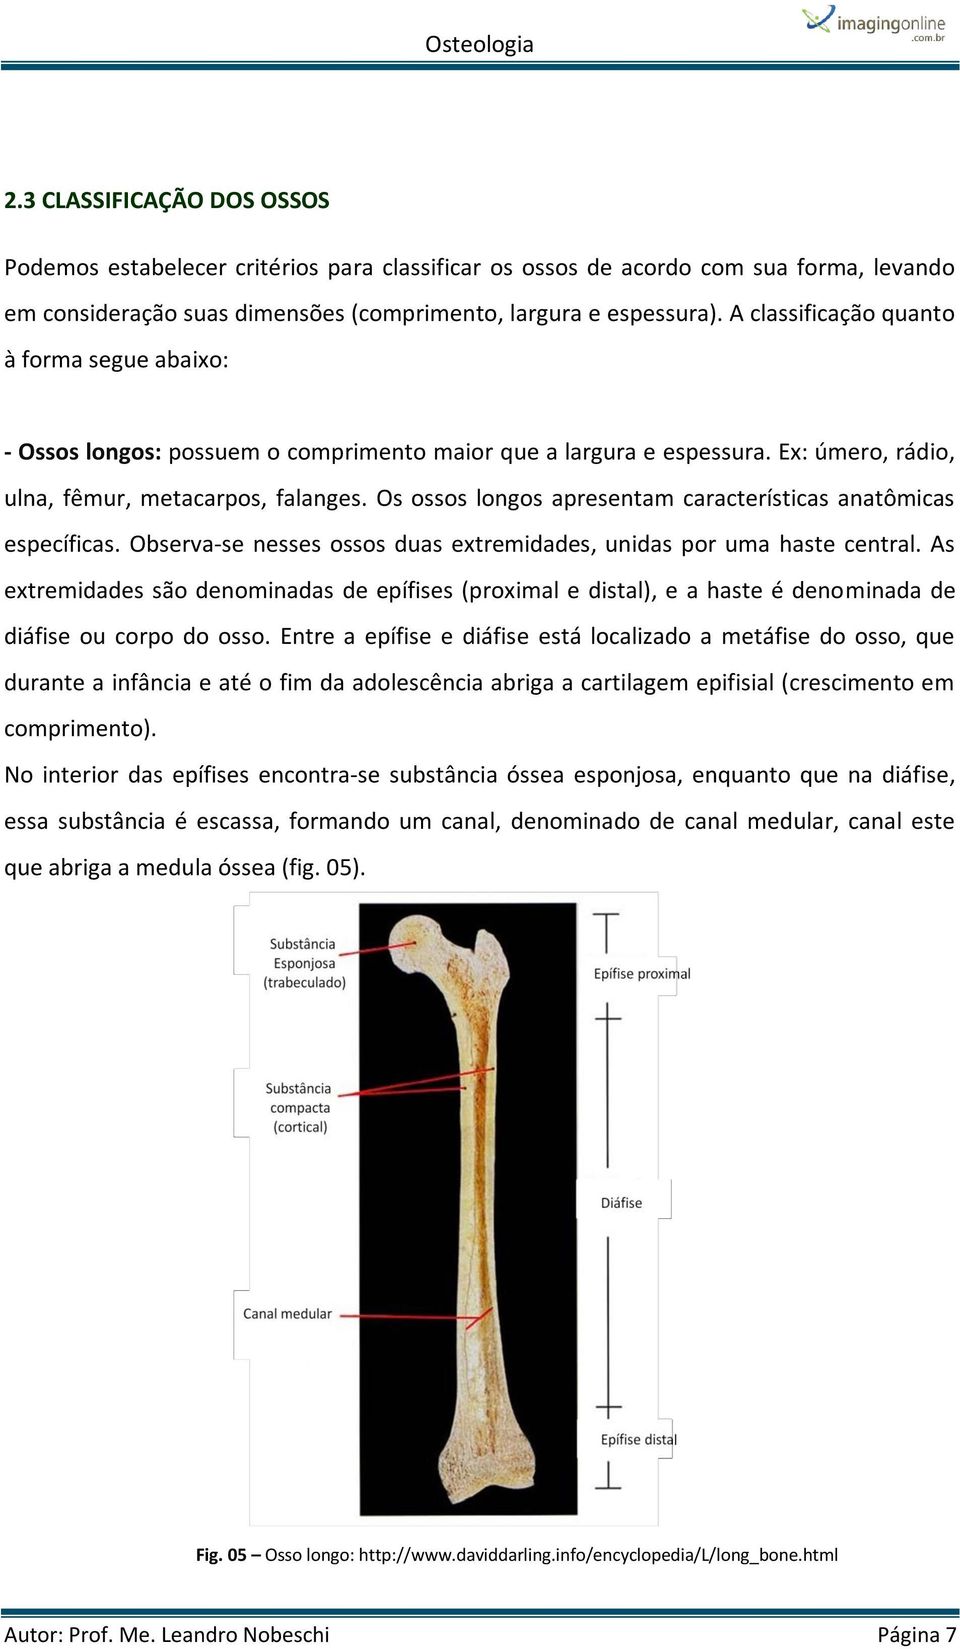 Os ossos longos apresentam características anatômicas específicas. Observa-se nesses ossos duas extremidades, unidas por uma haste central.